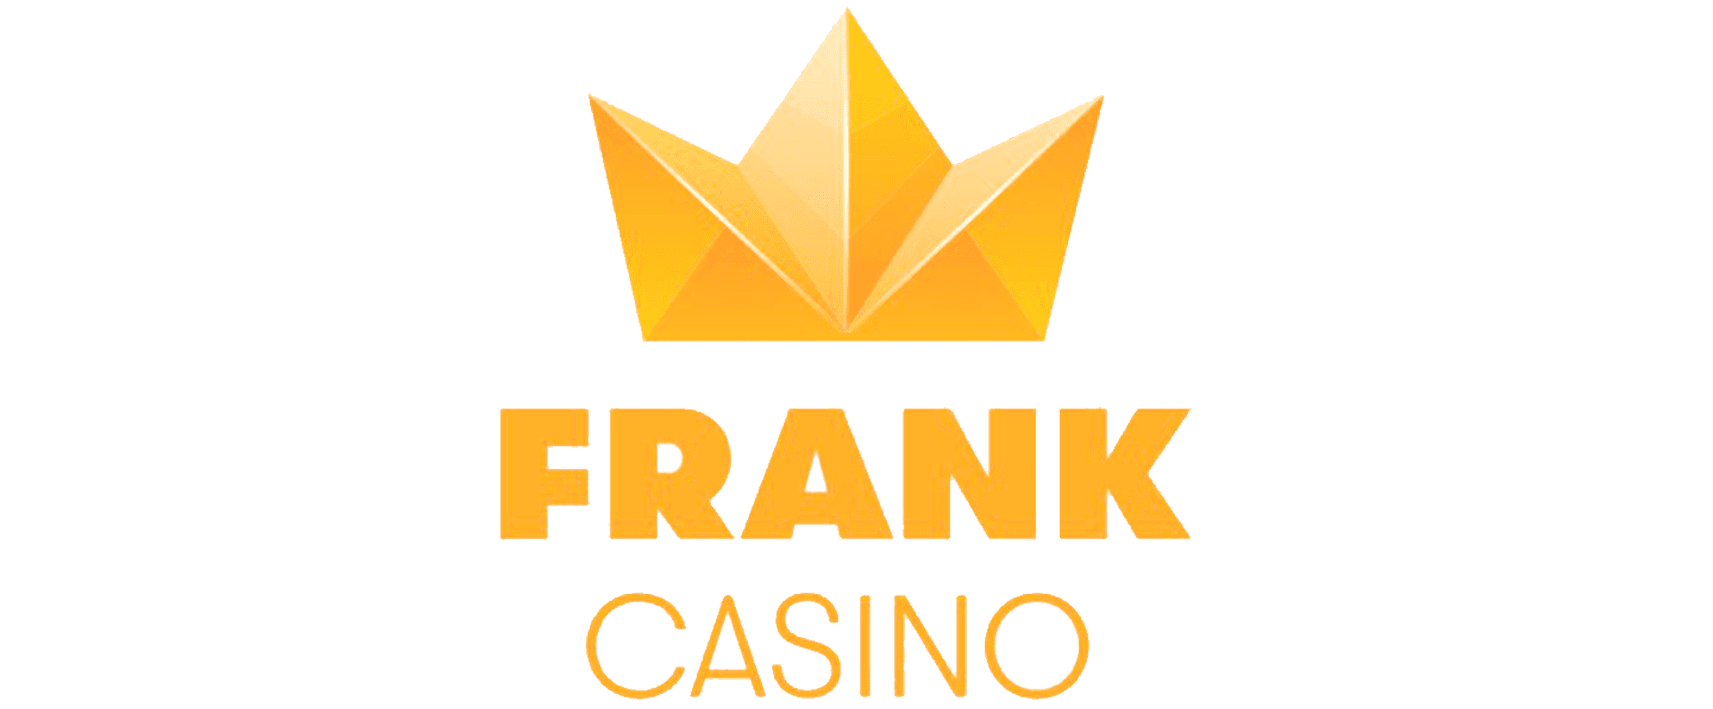 Casino king full movie